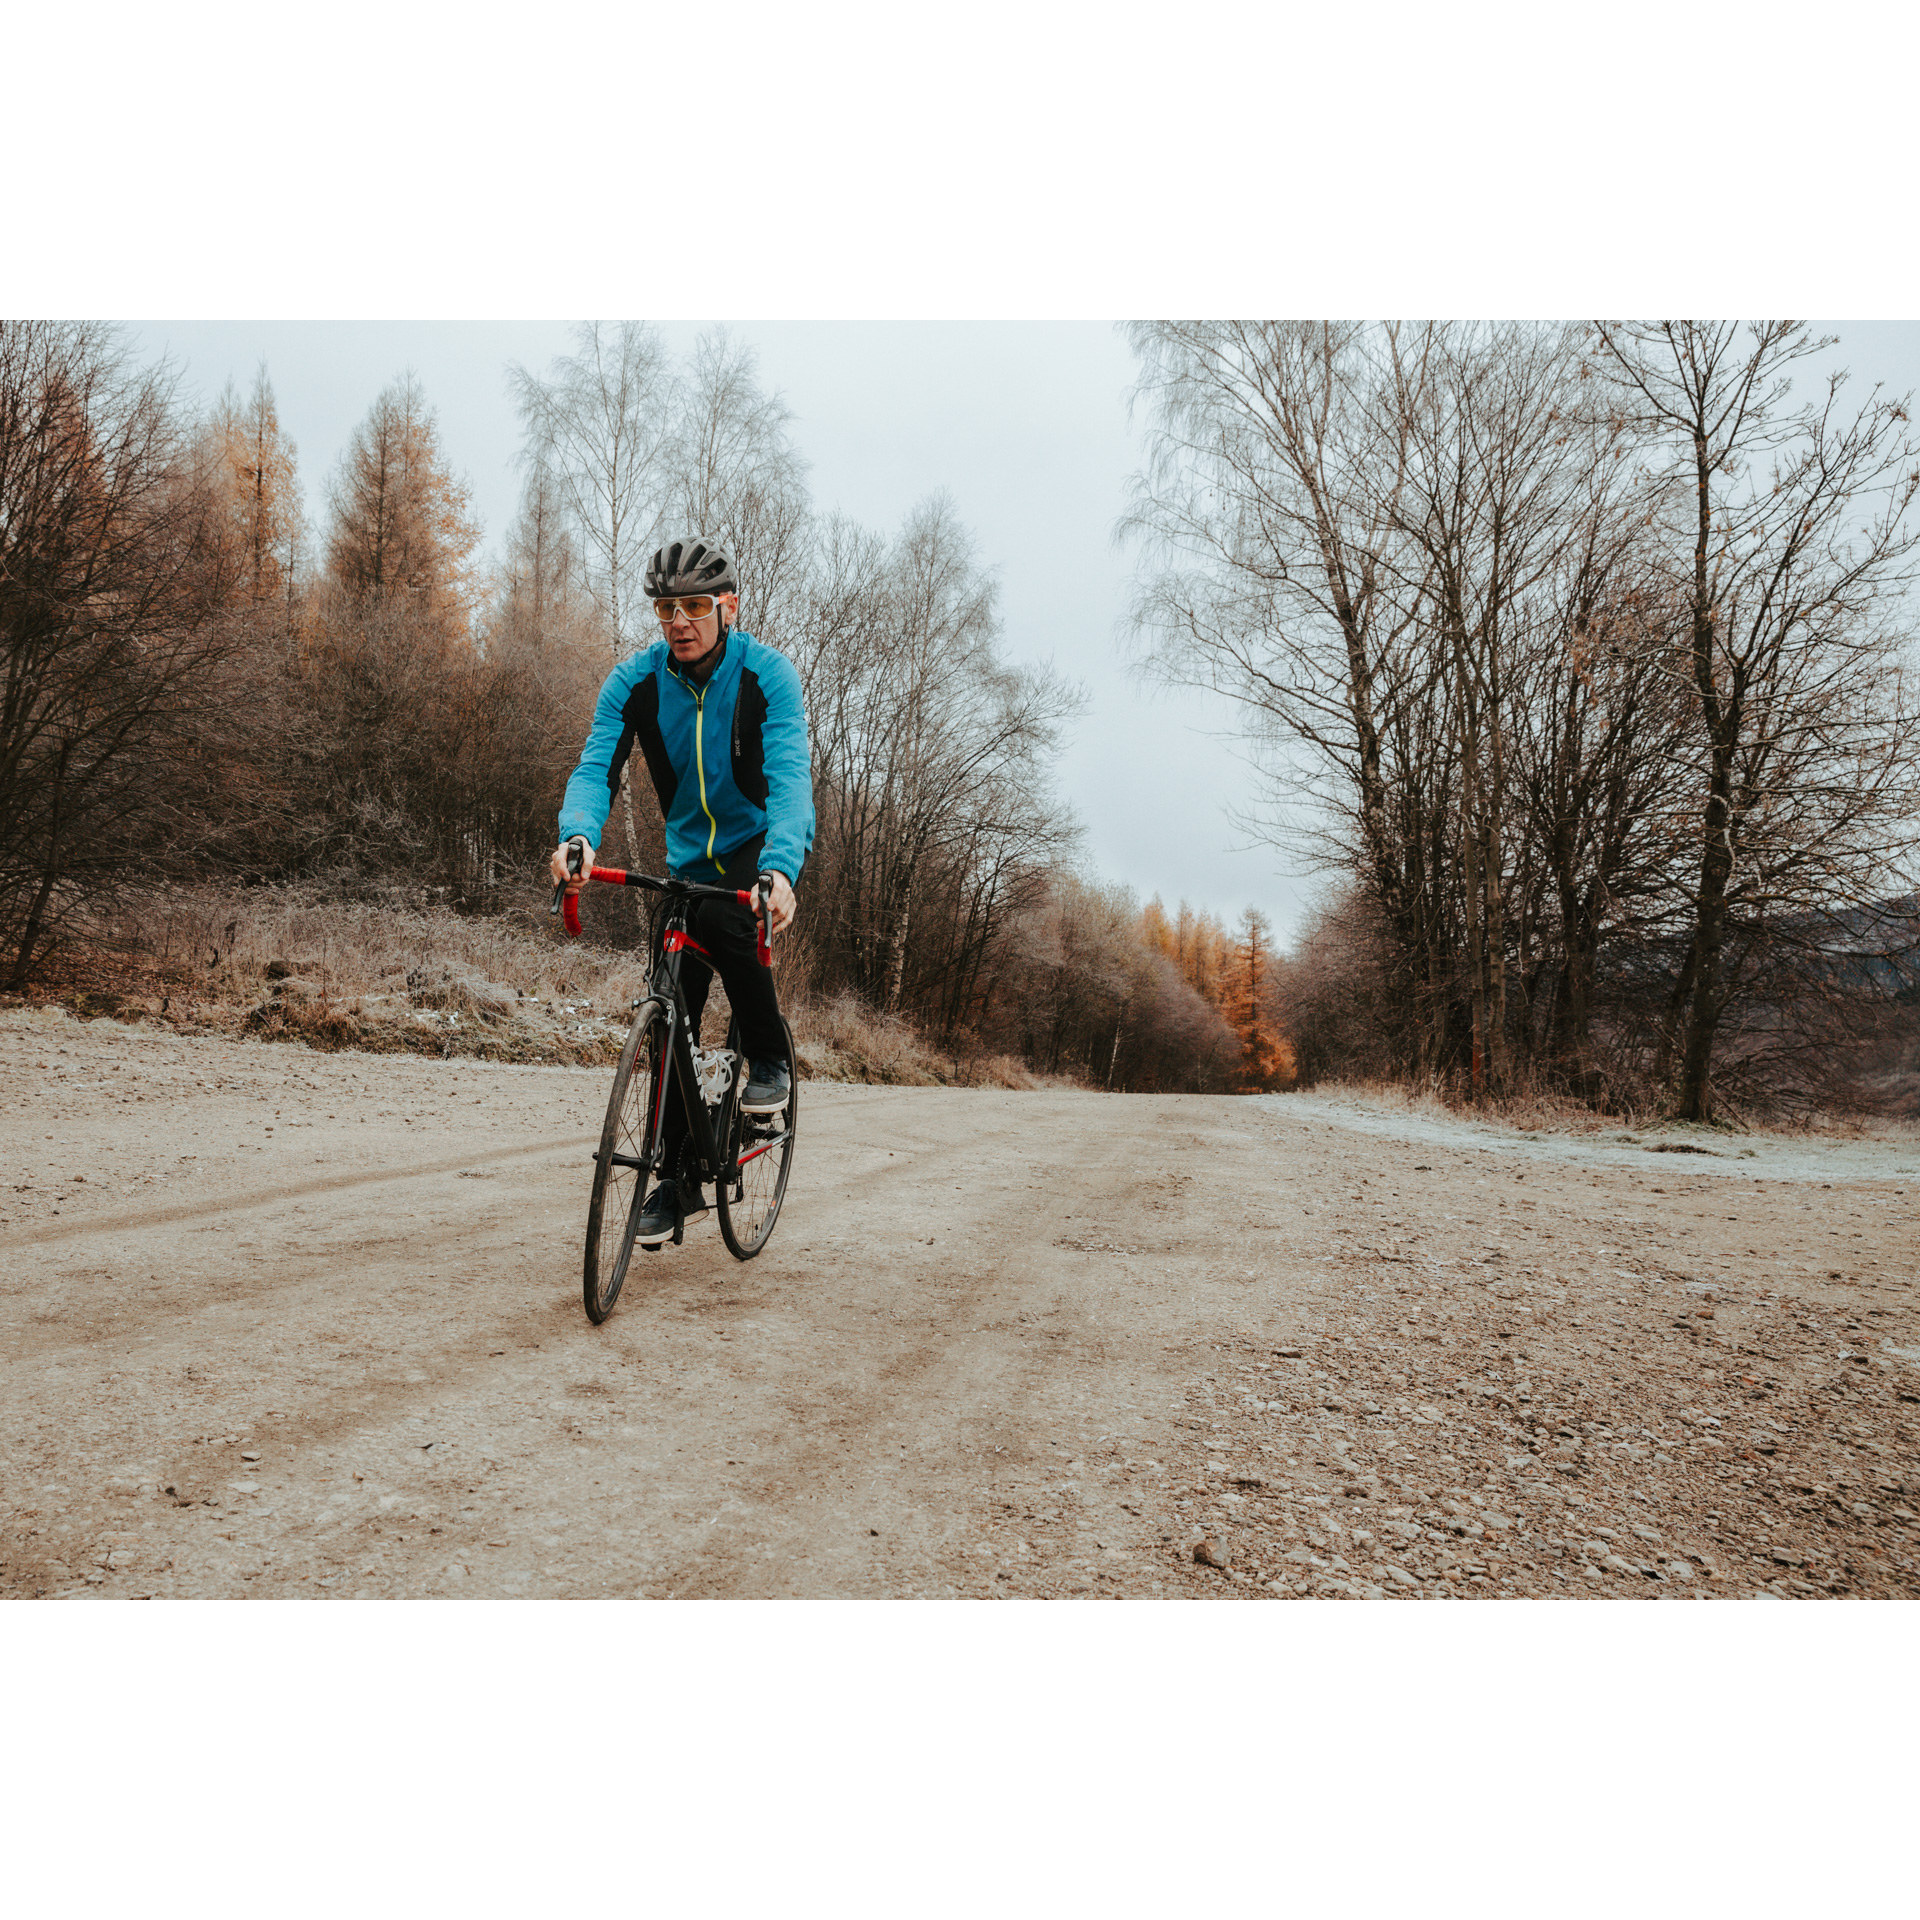 Rowerzysta w niebieskiej kurtce i kasku, jadący na czerwonym rowerze po piaszczystej drodze pod górkę, w tle kolorowe drzewa